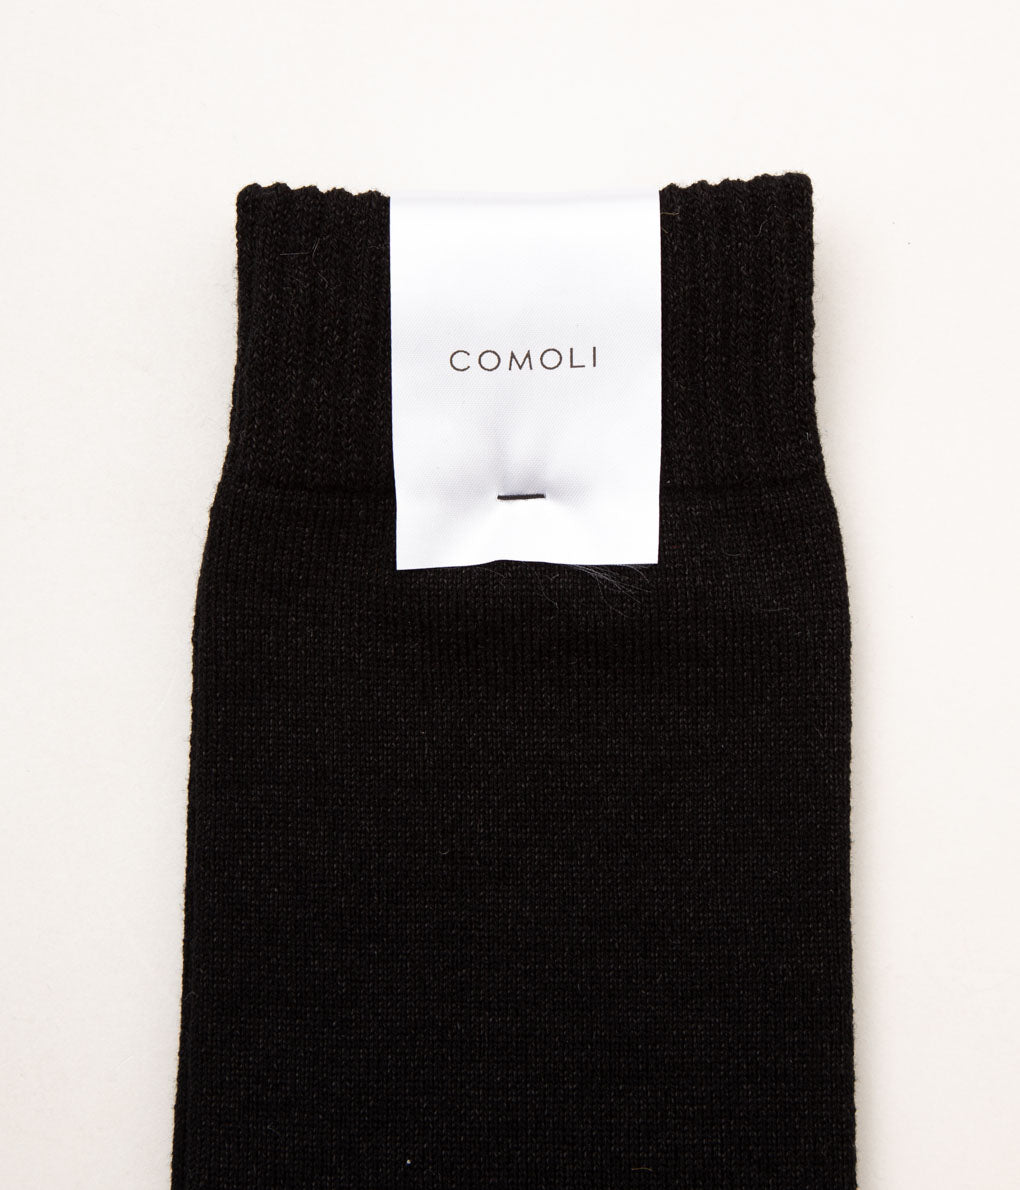 COMOLI "和紙ウール 足袋ソックス"(BLACK)